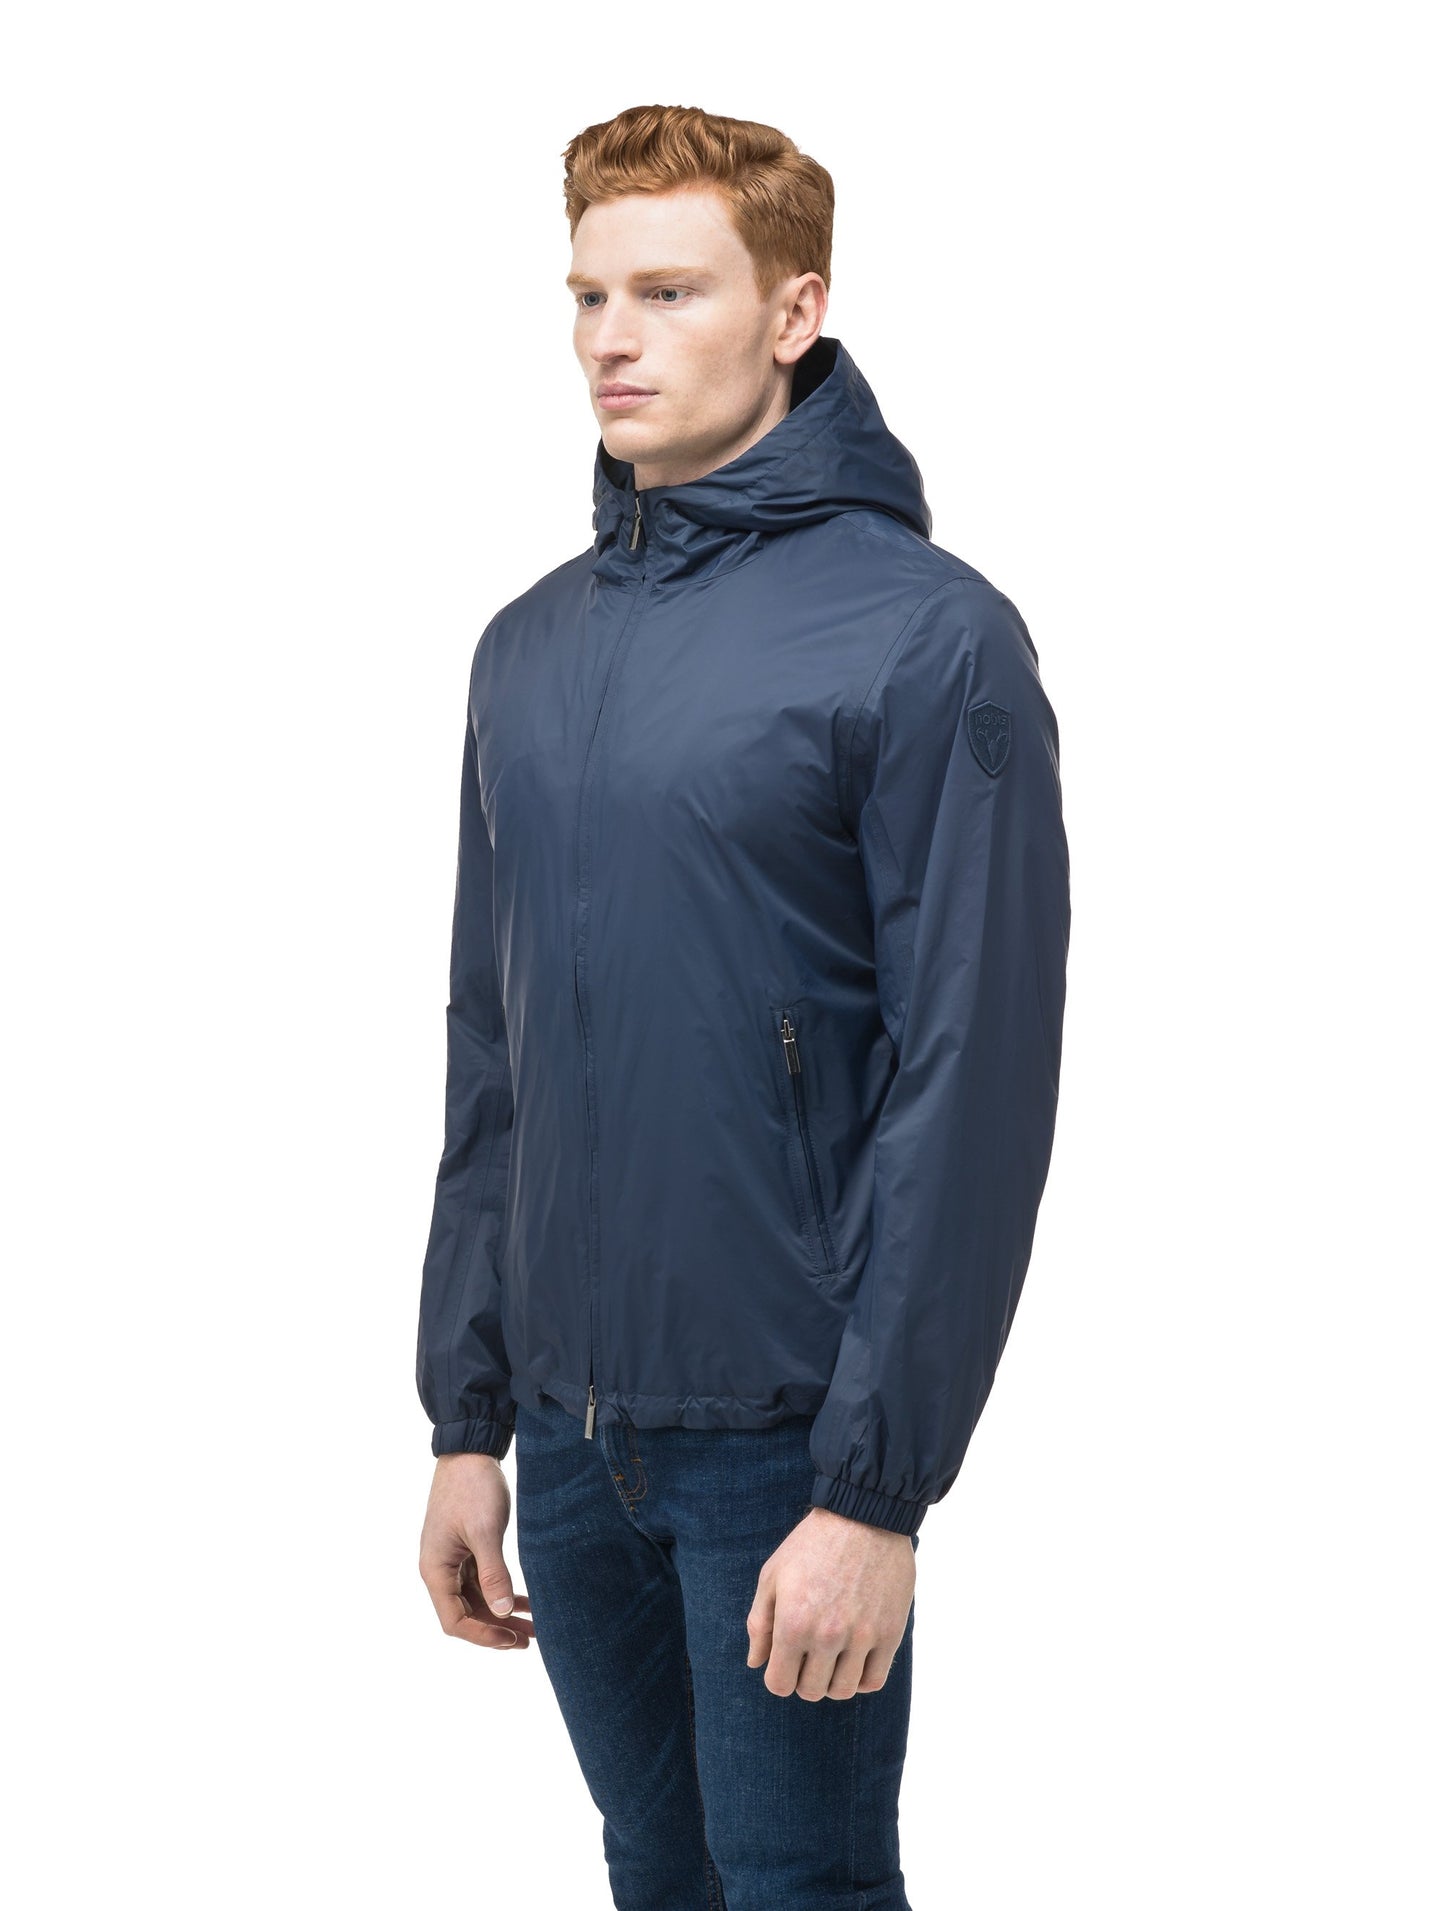 Men's waist length zip up hooded windproof jacket in Marine